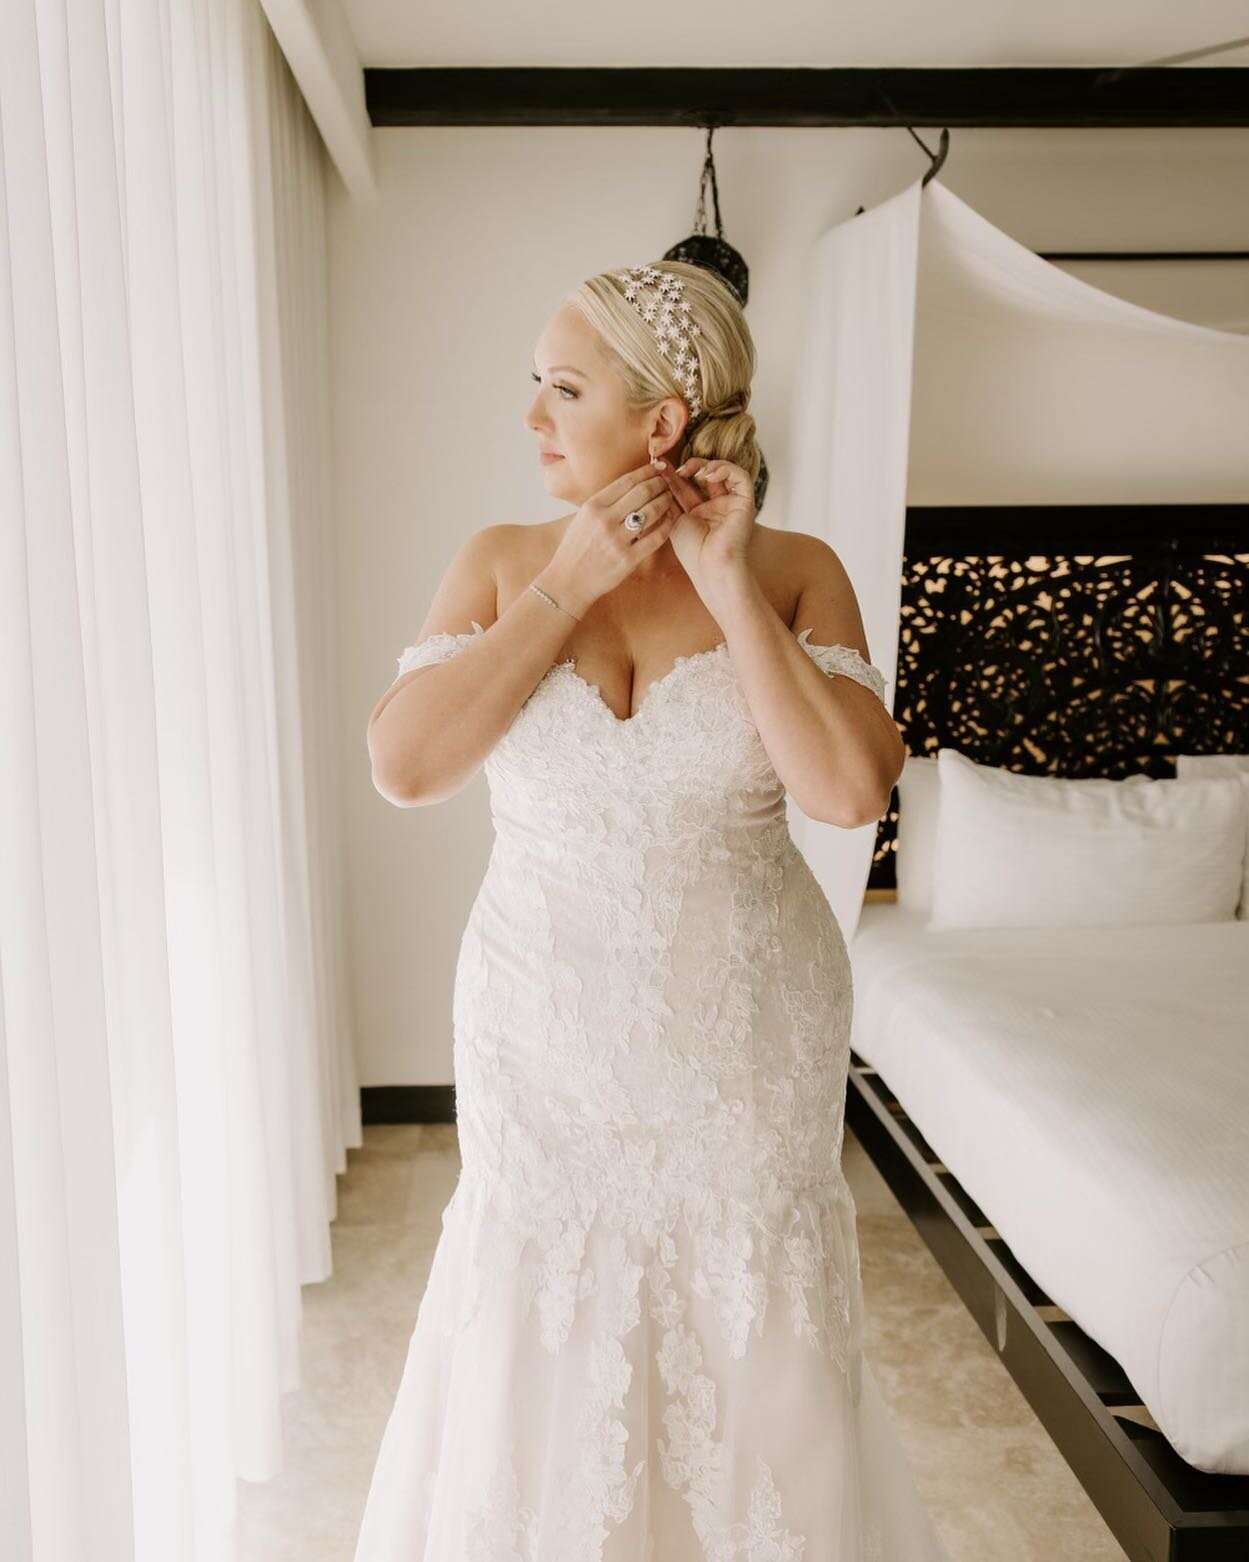 ✨ Couture Bride @taylorguzek on her wedding day in her stunning @valstefani gown✨